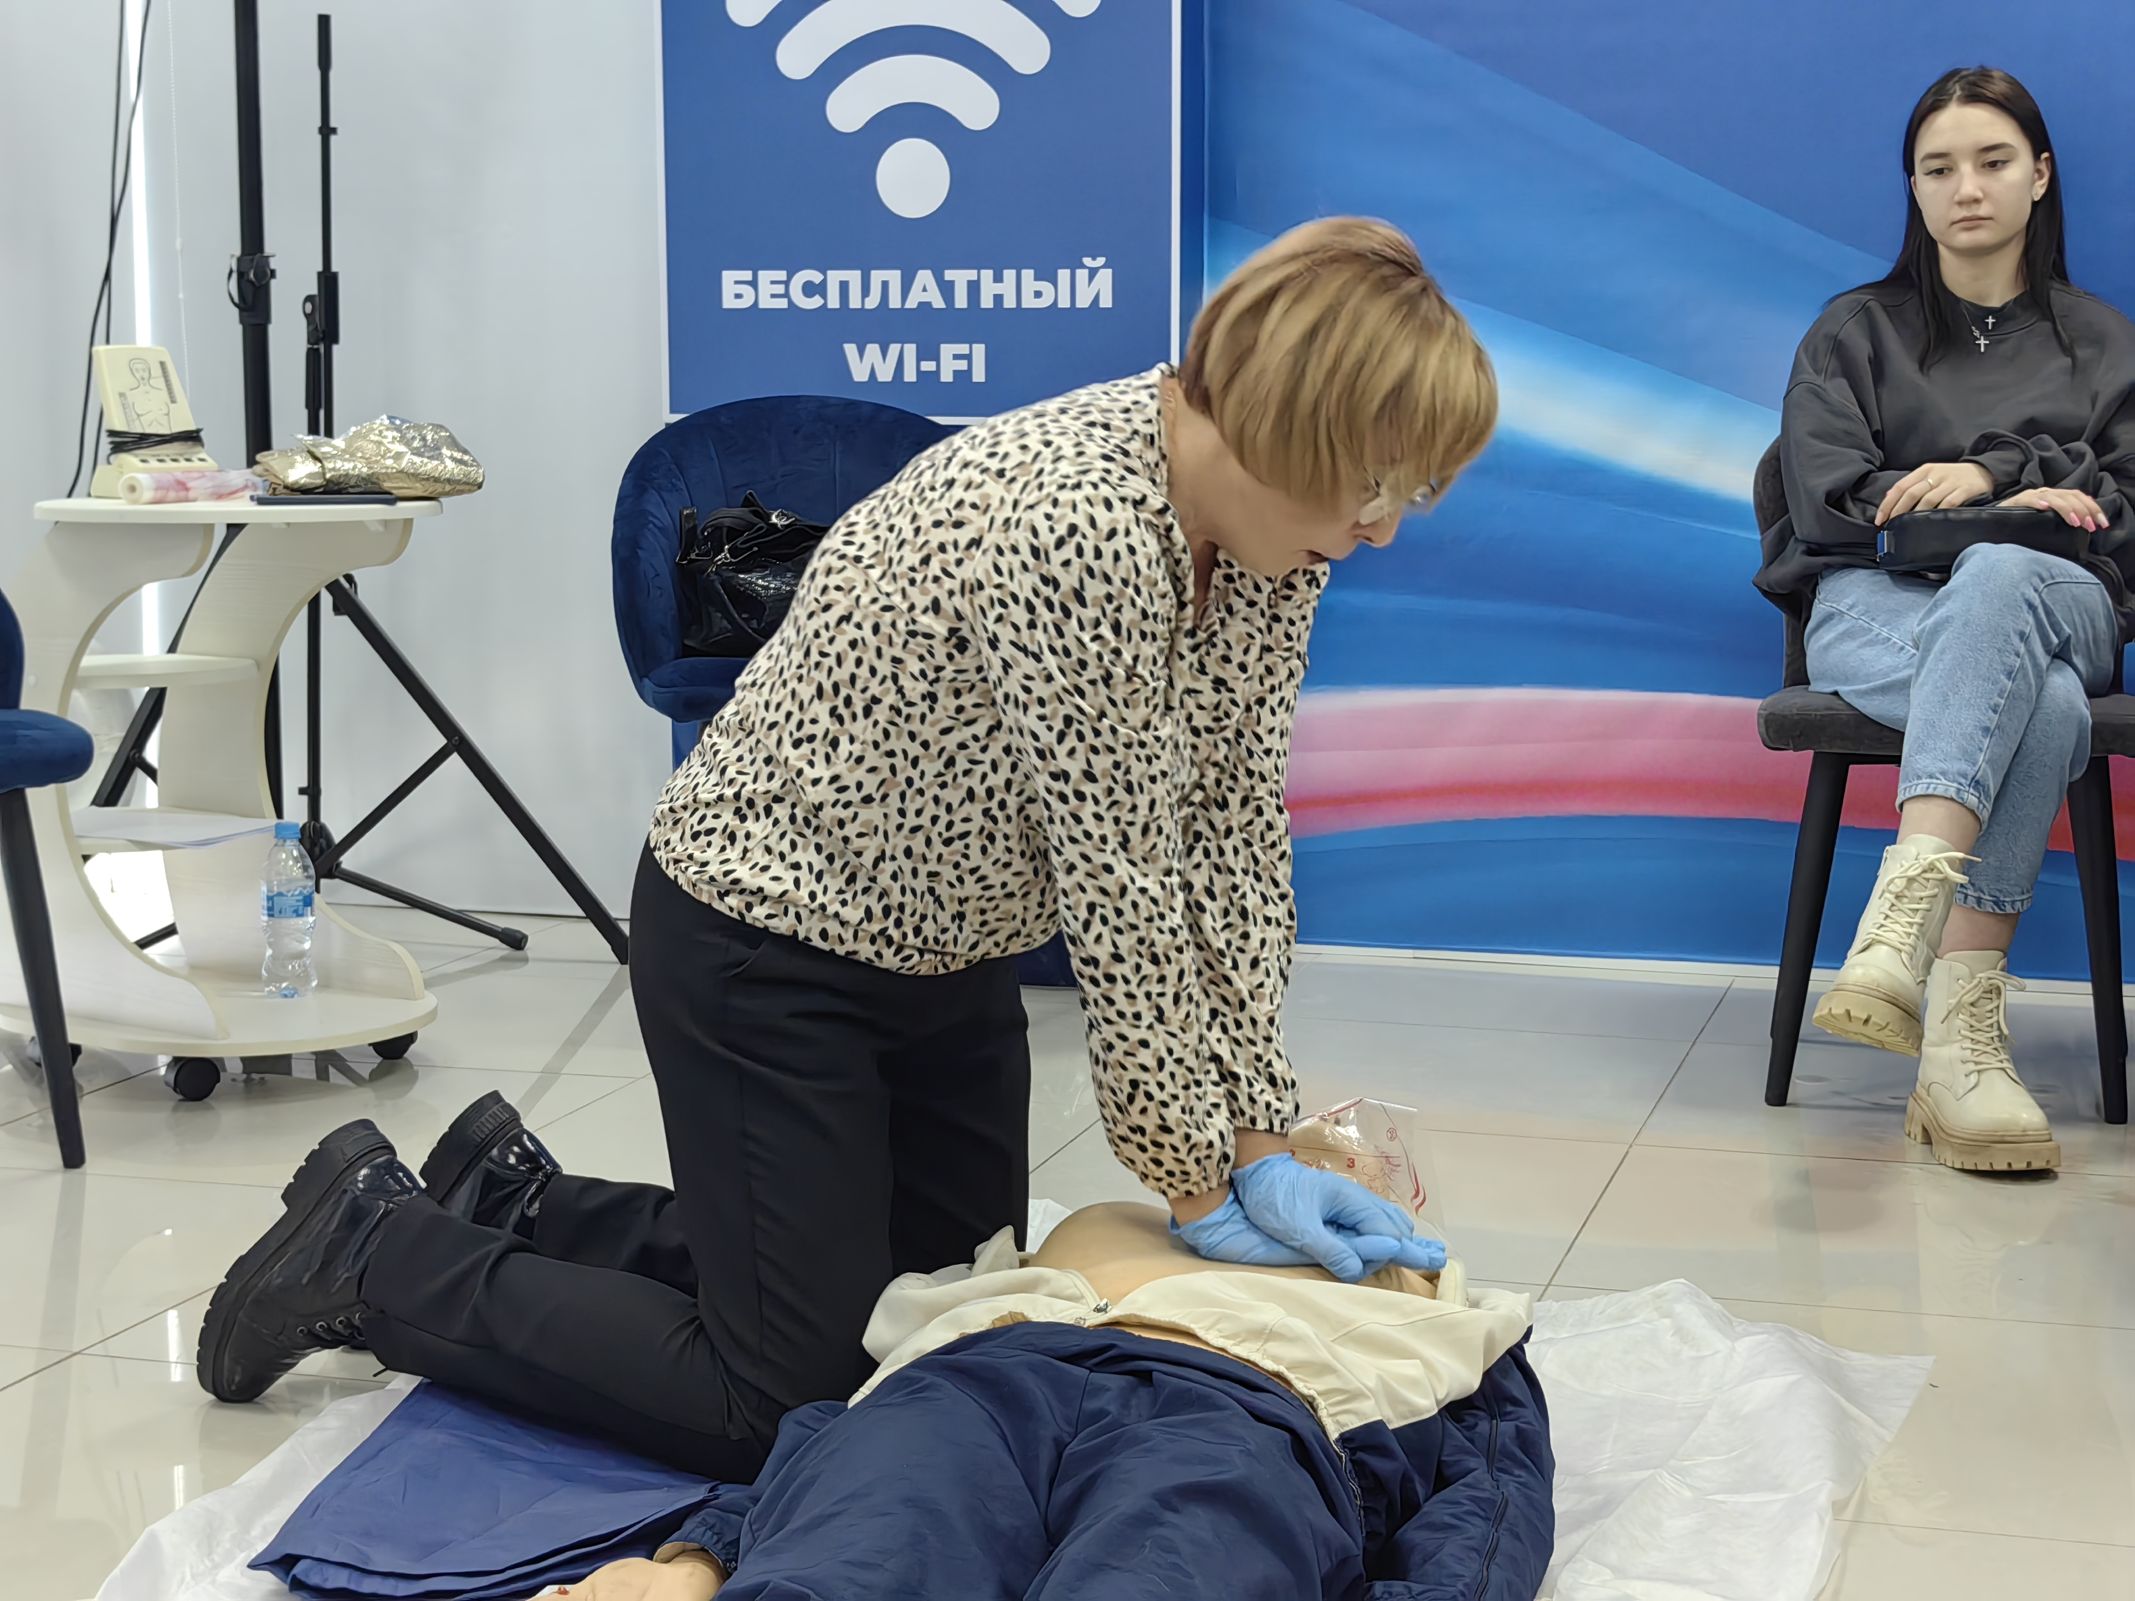 Мастер-класс по навыкам оказания первой помощи состоялся в Ярославле